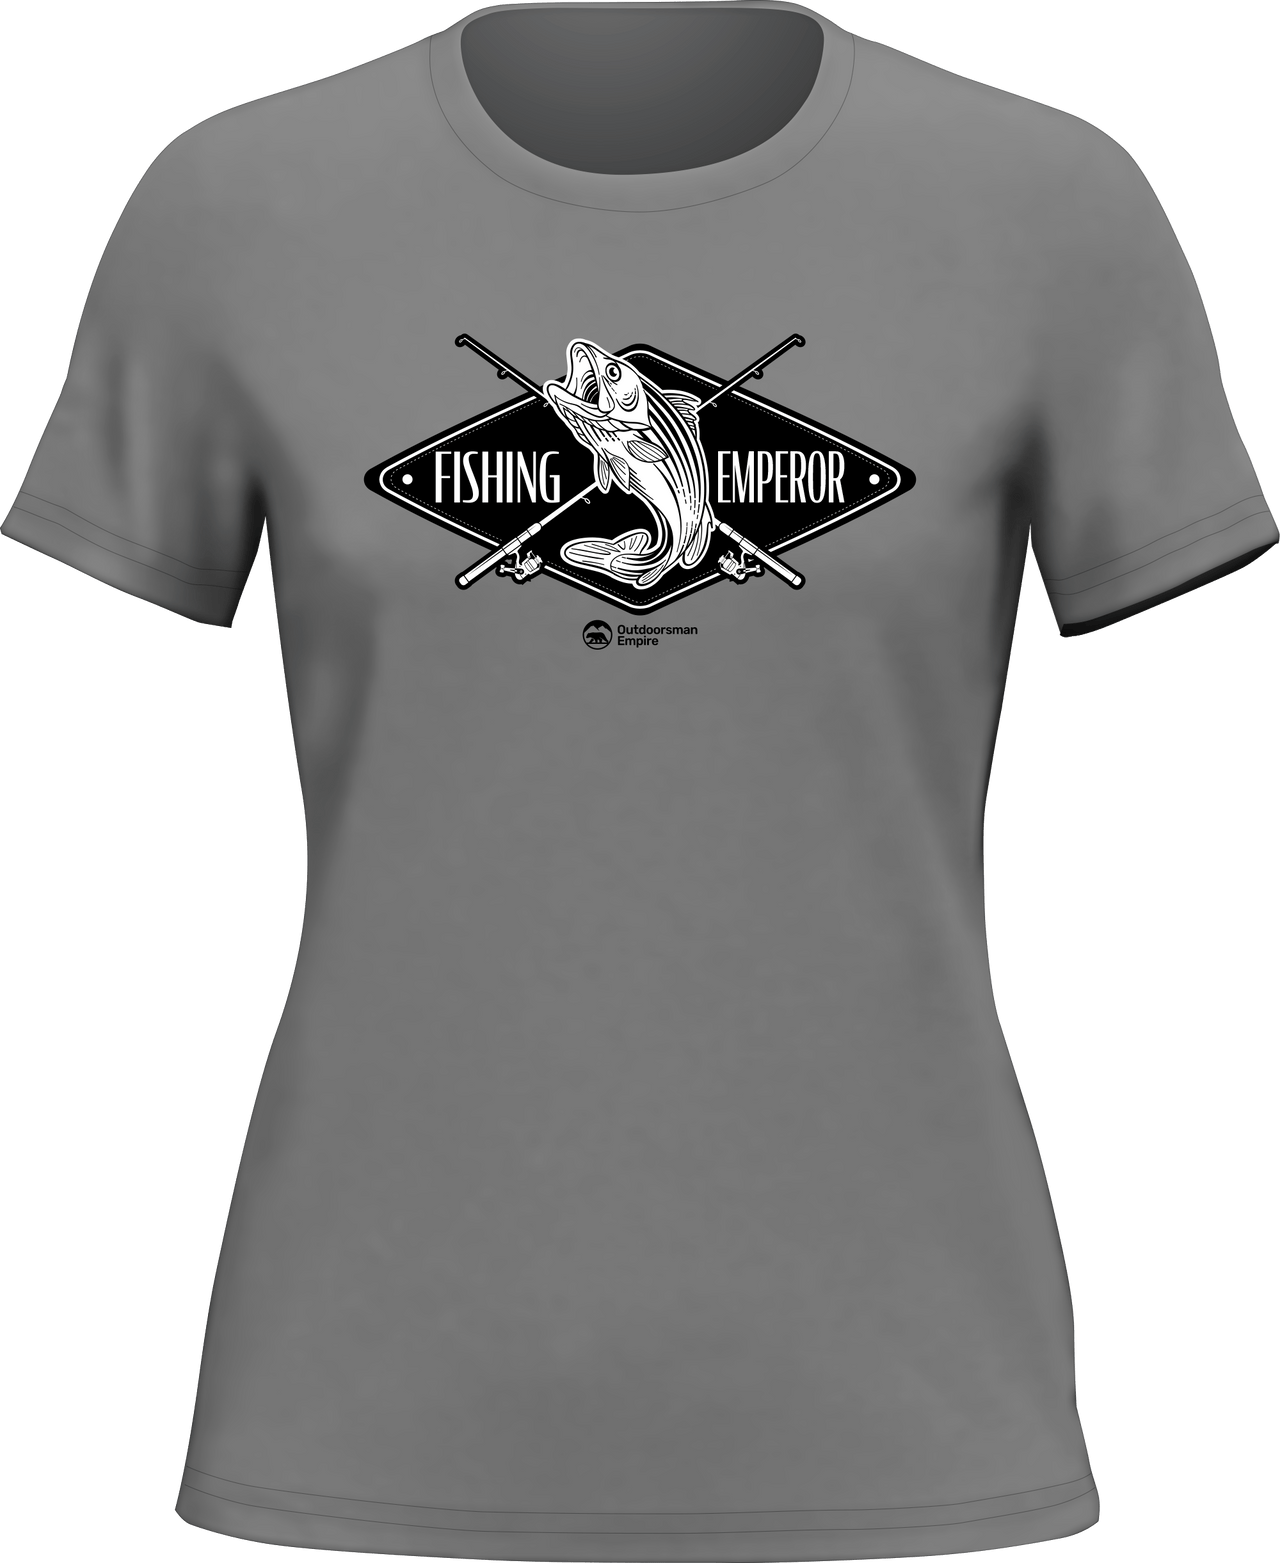 Fishing Emperor v2 T-Shirt for Women